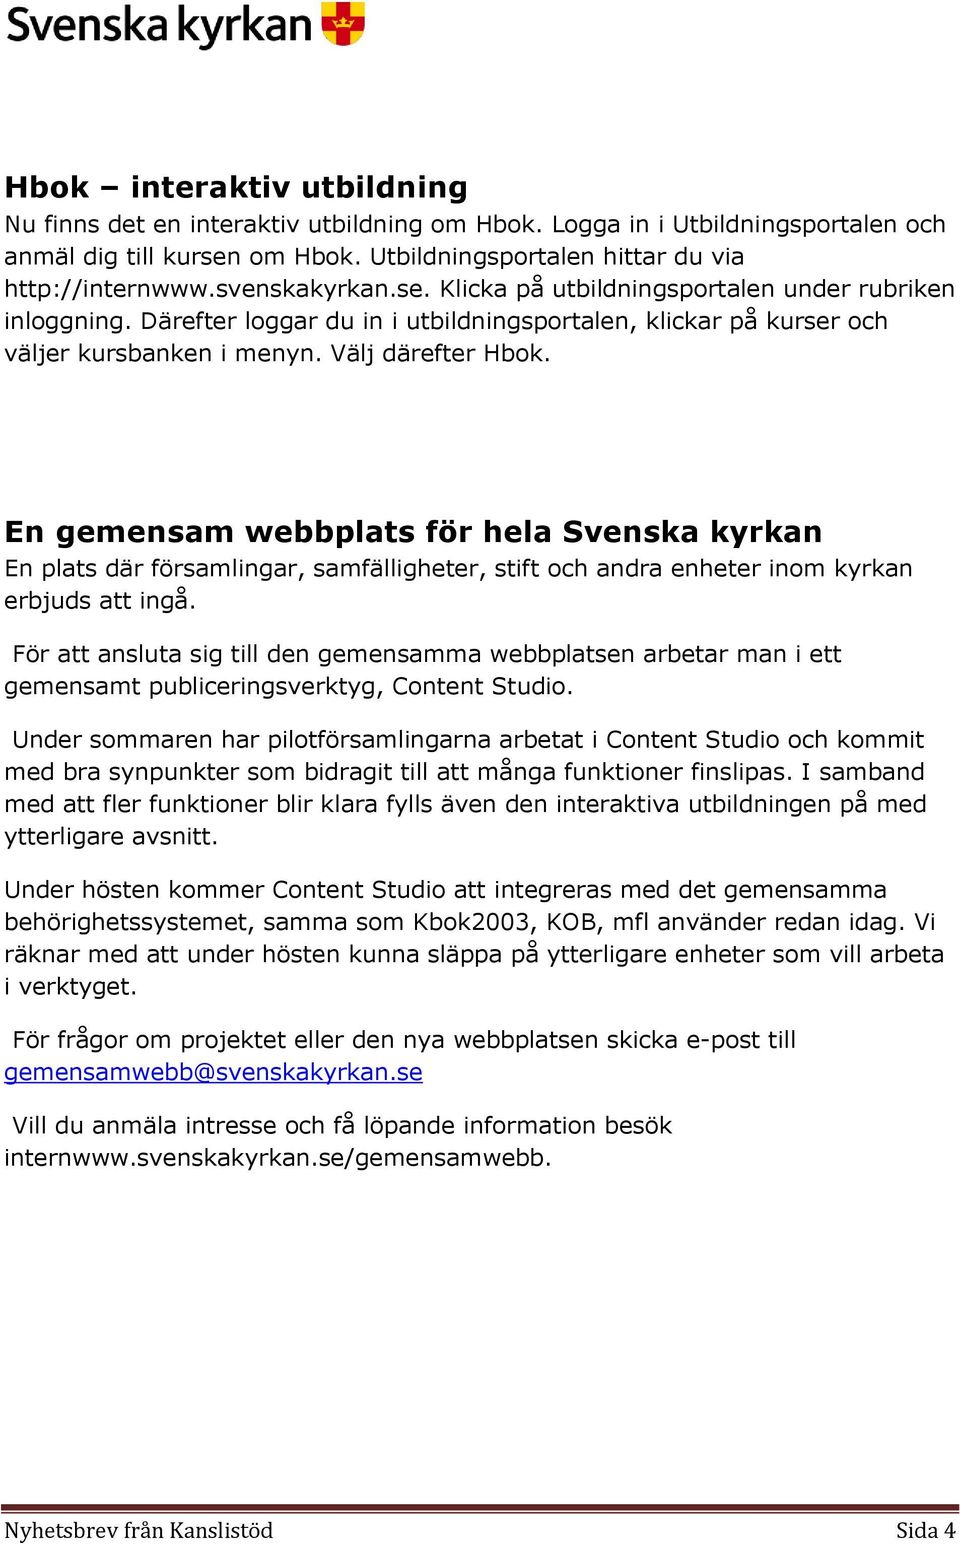 En gemensam webbplats för hela Svenska kyrkan En plats där församlingar, samfälligheter, stift och andra enheter inom kyrkan erbjuds att ingå.